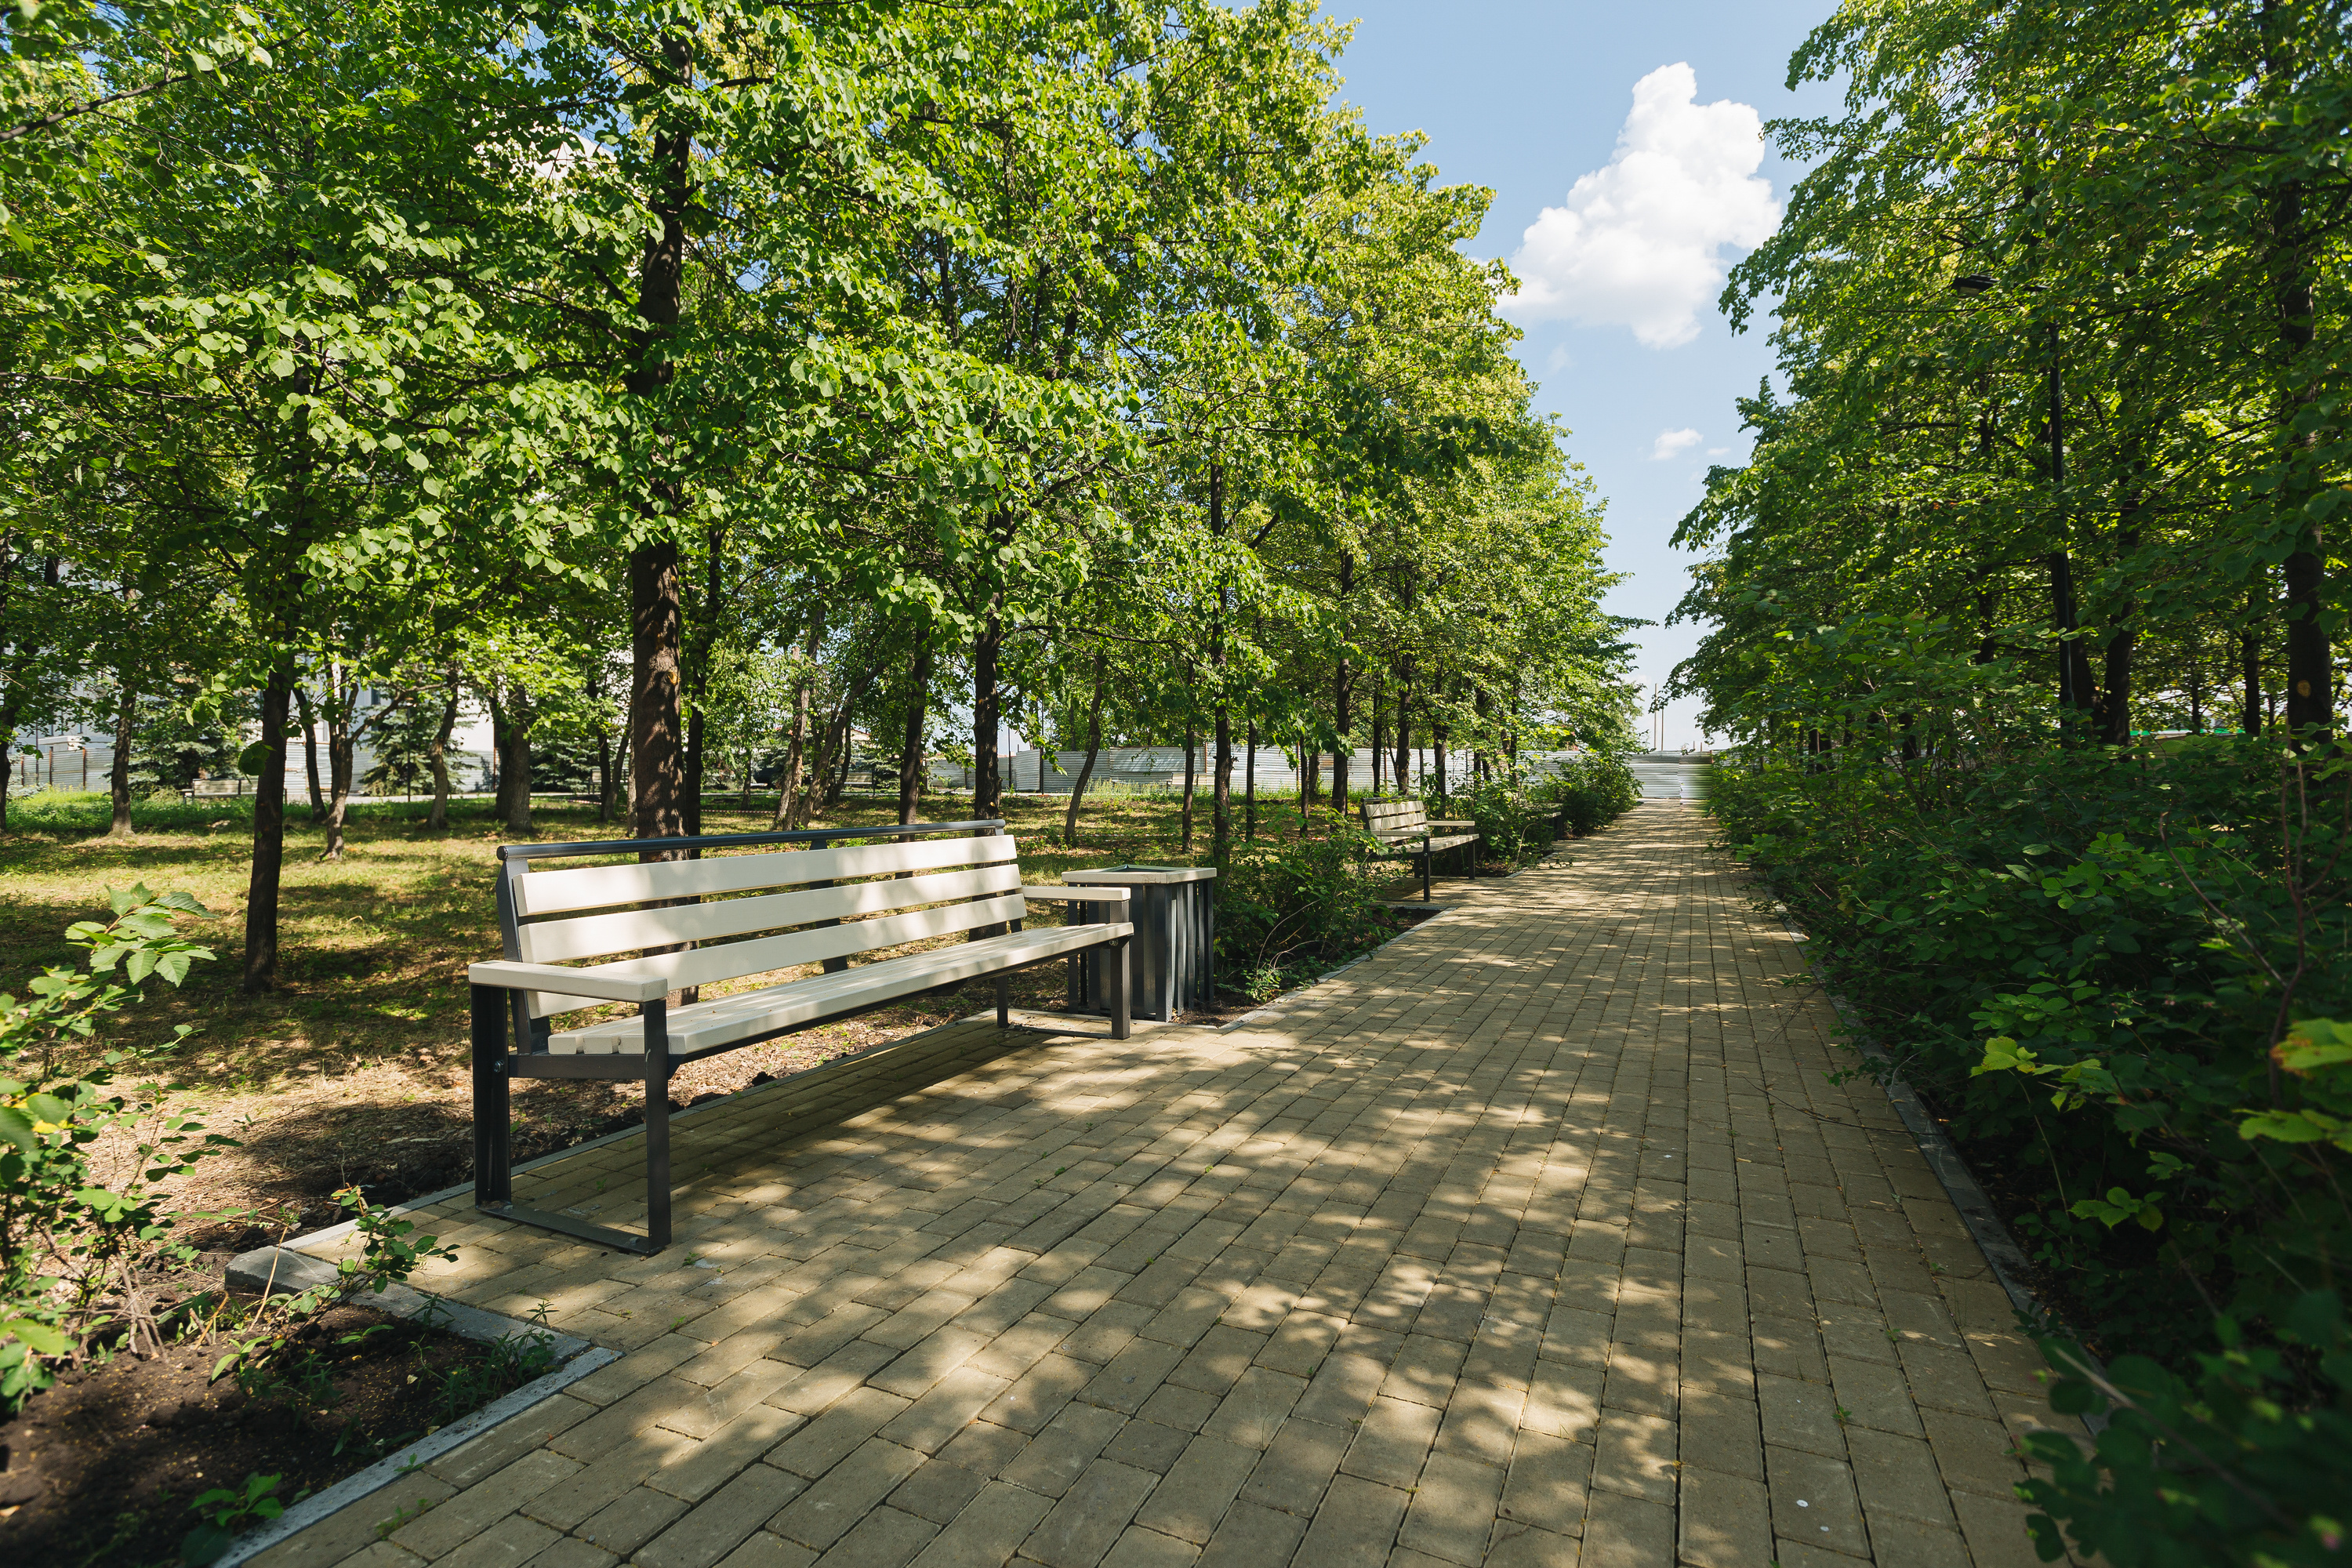 Зеленый «остров» на месте застройки удалось сохранить нетронутым — теперь это благоустроенный бульвар-парк с прогулочными аллеями и местами для отдыха